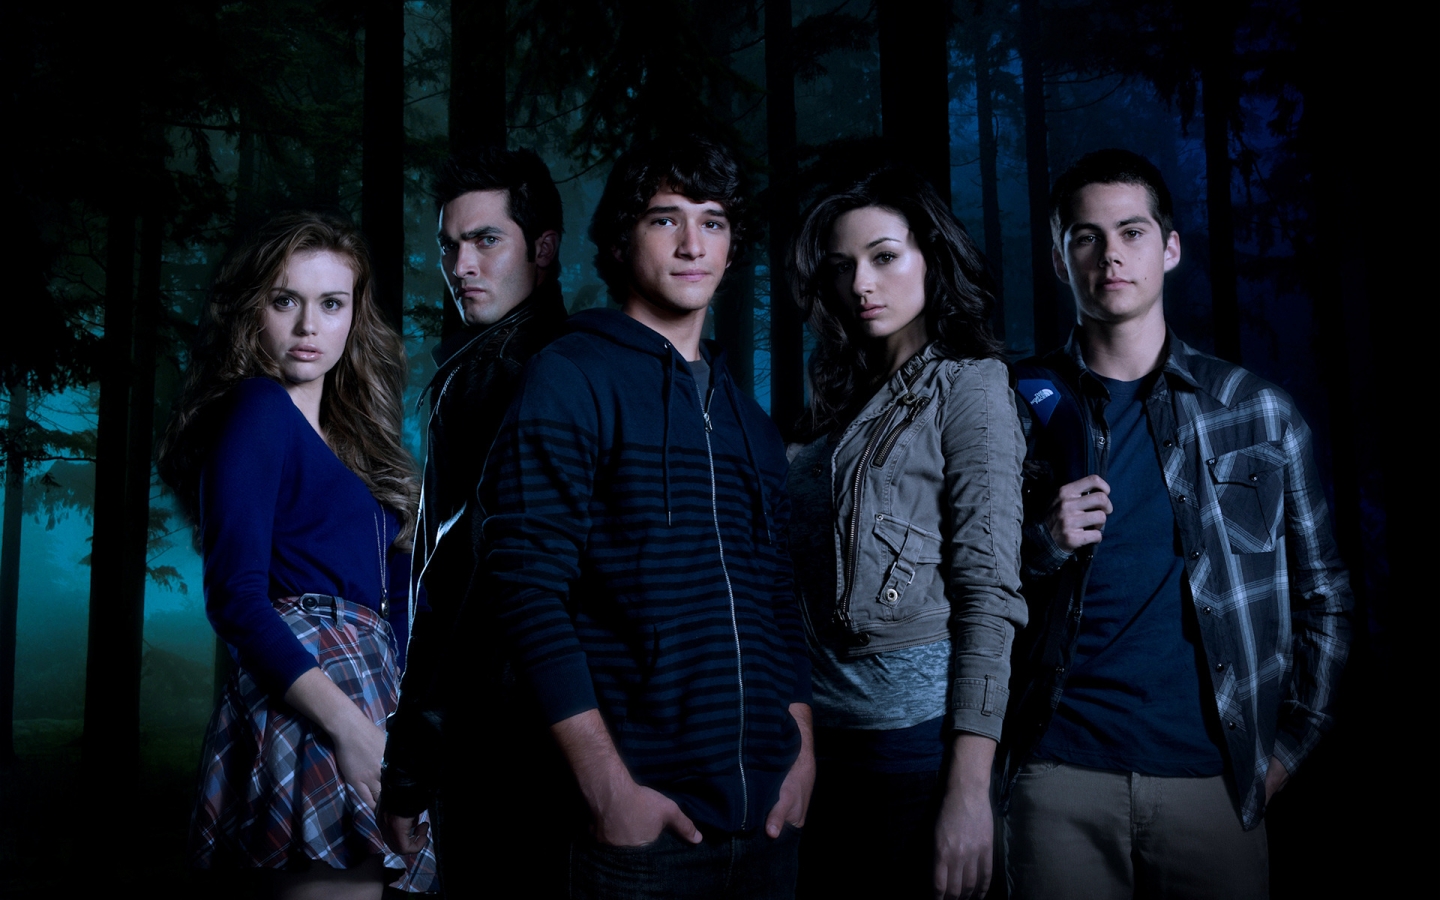 Teen Wolf Cast for 1440 x 900 widescreen resolution